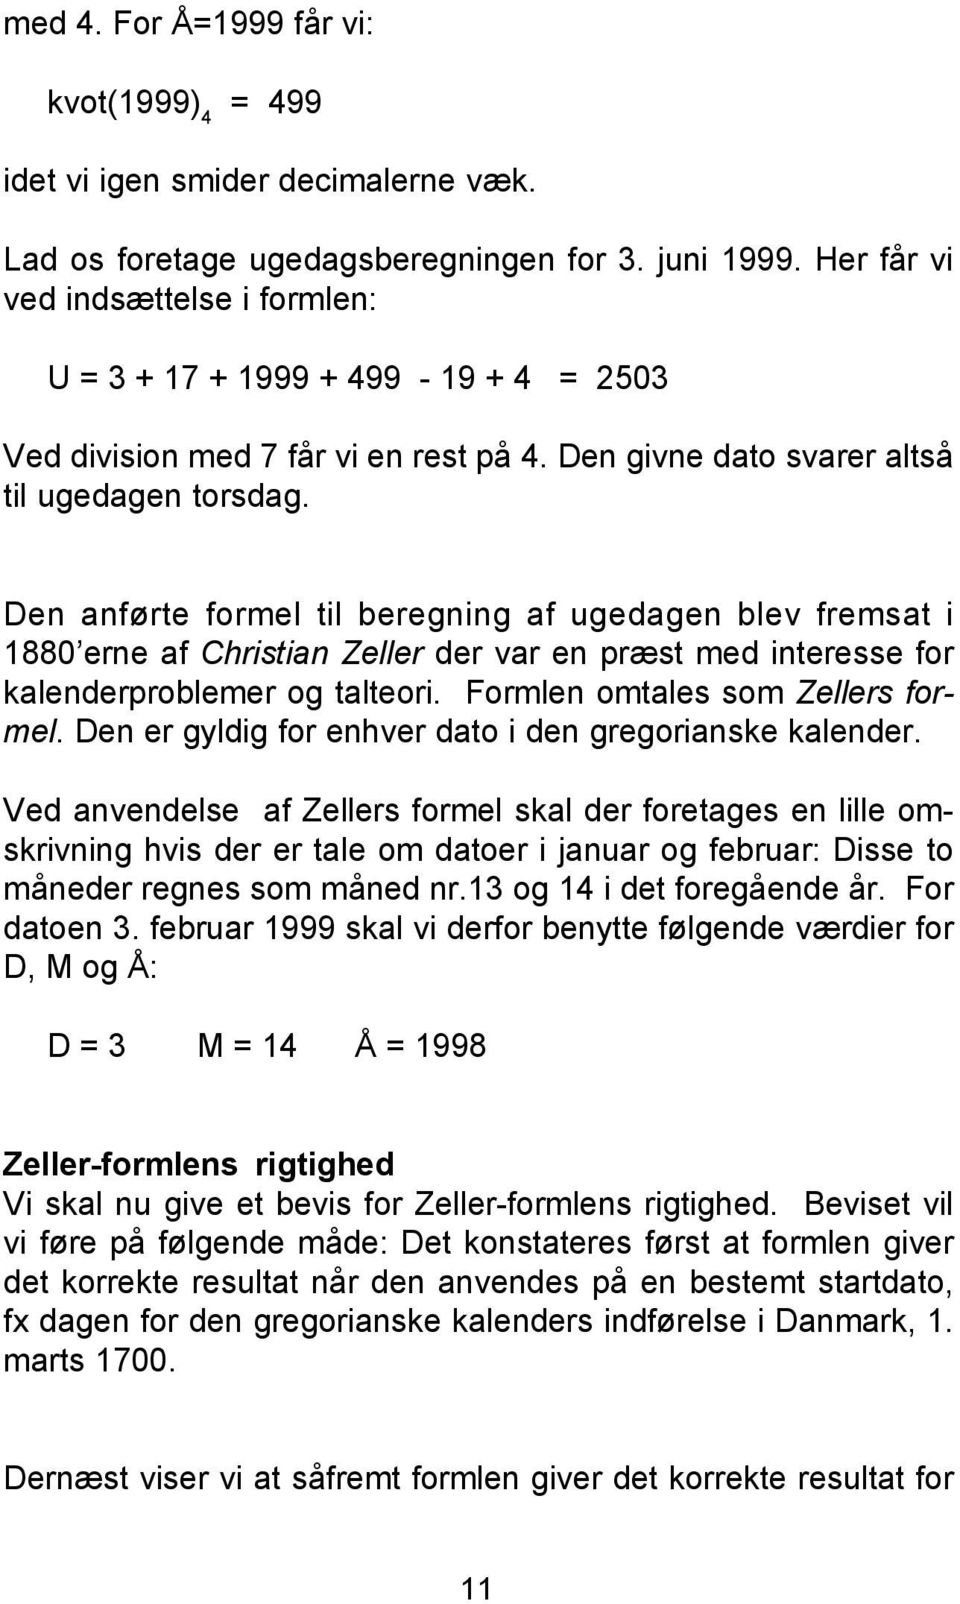 Den anførte formel til beregning af ugedagen blev fremsat i 1880 erne af Christian Zeller der var en præst med interesse for kalenderproblemer og talteori. Formlen omtales som Zellers formel.